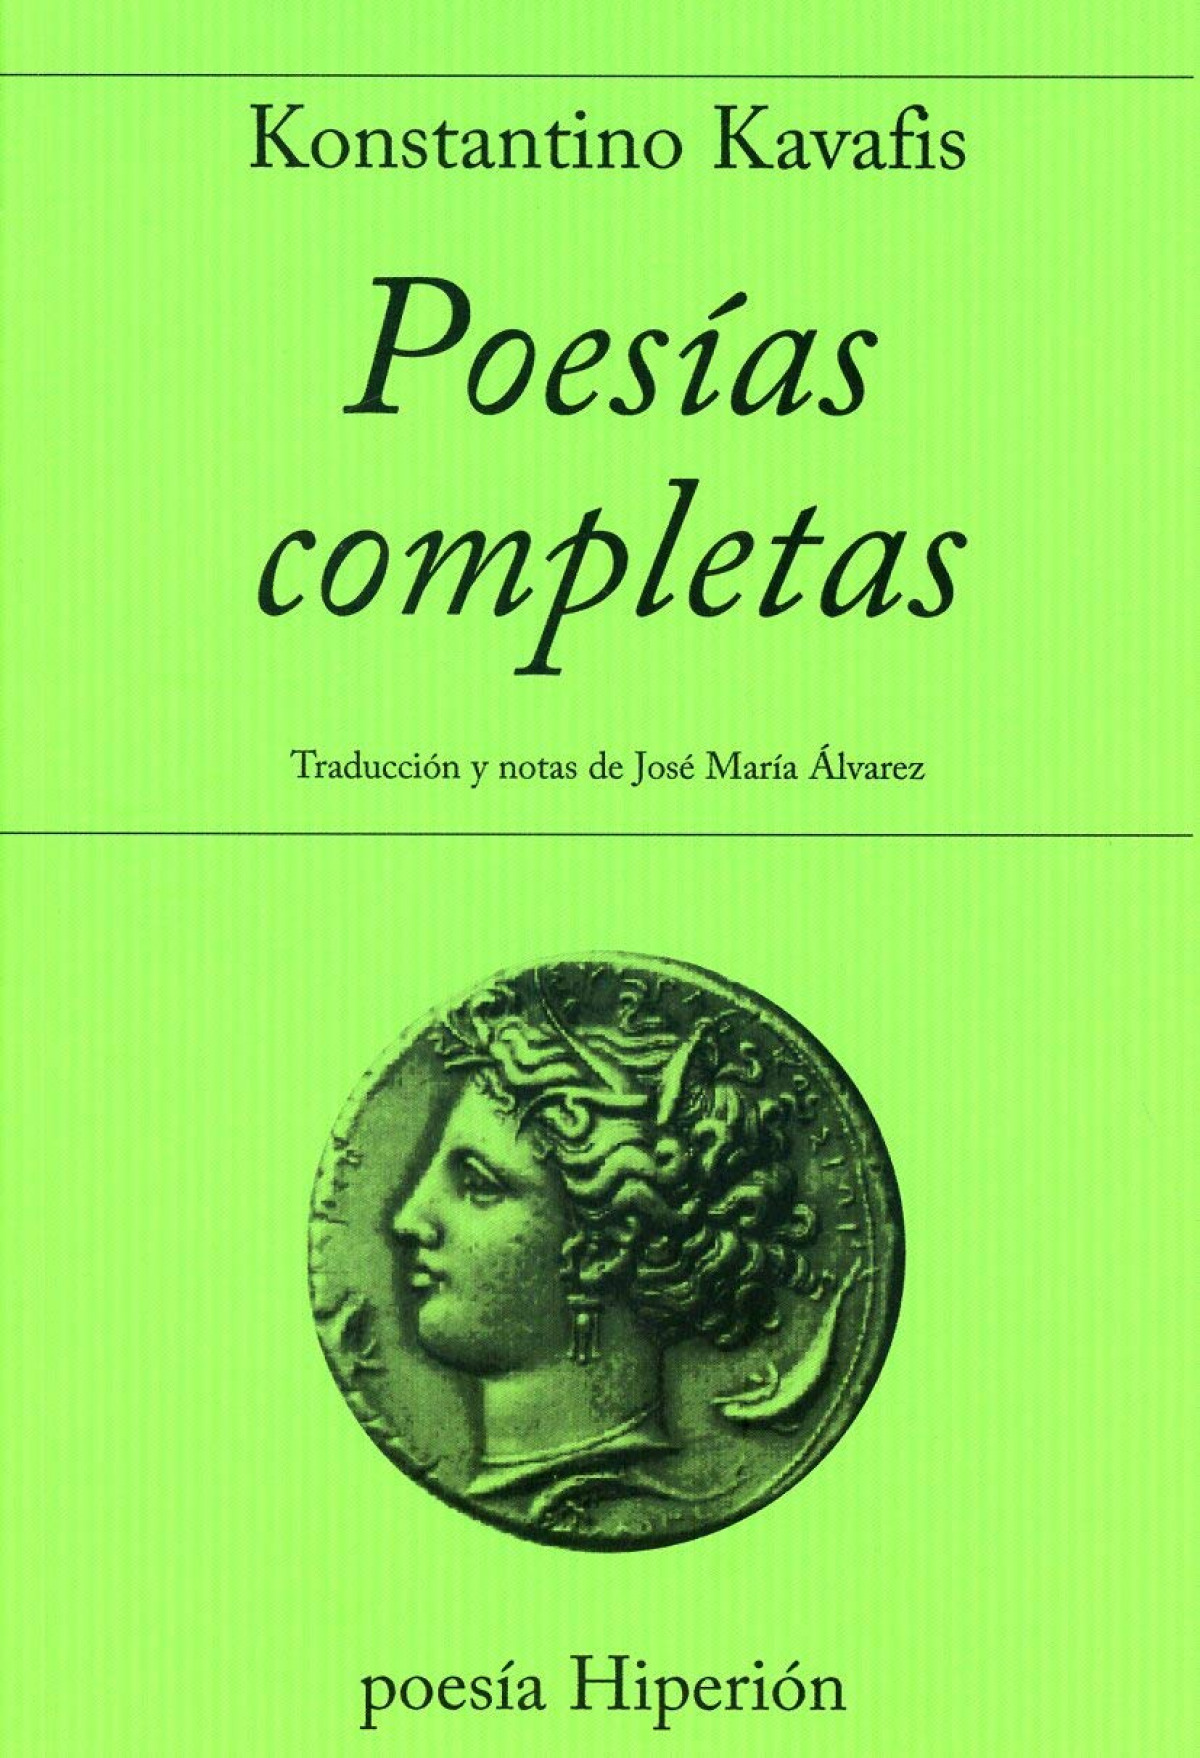 Poesias completas - Kavafis, Konstantinos